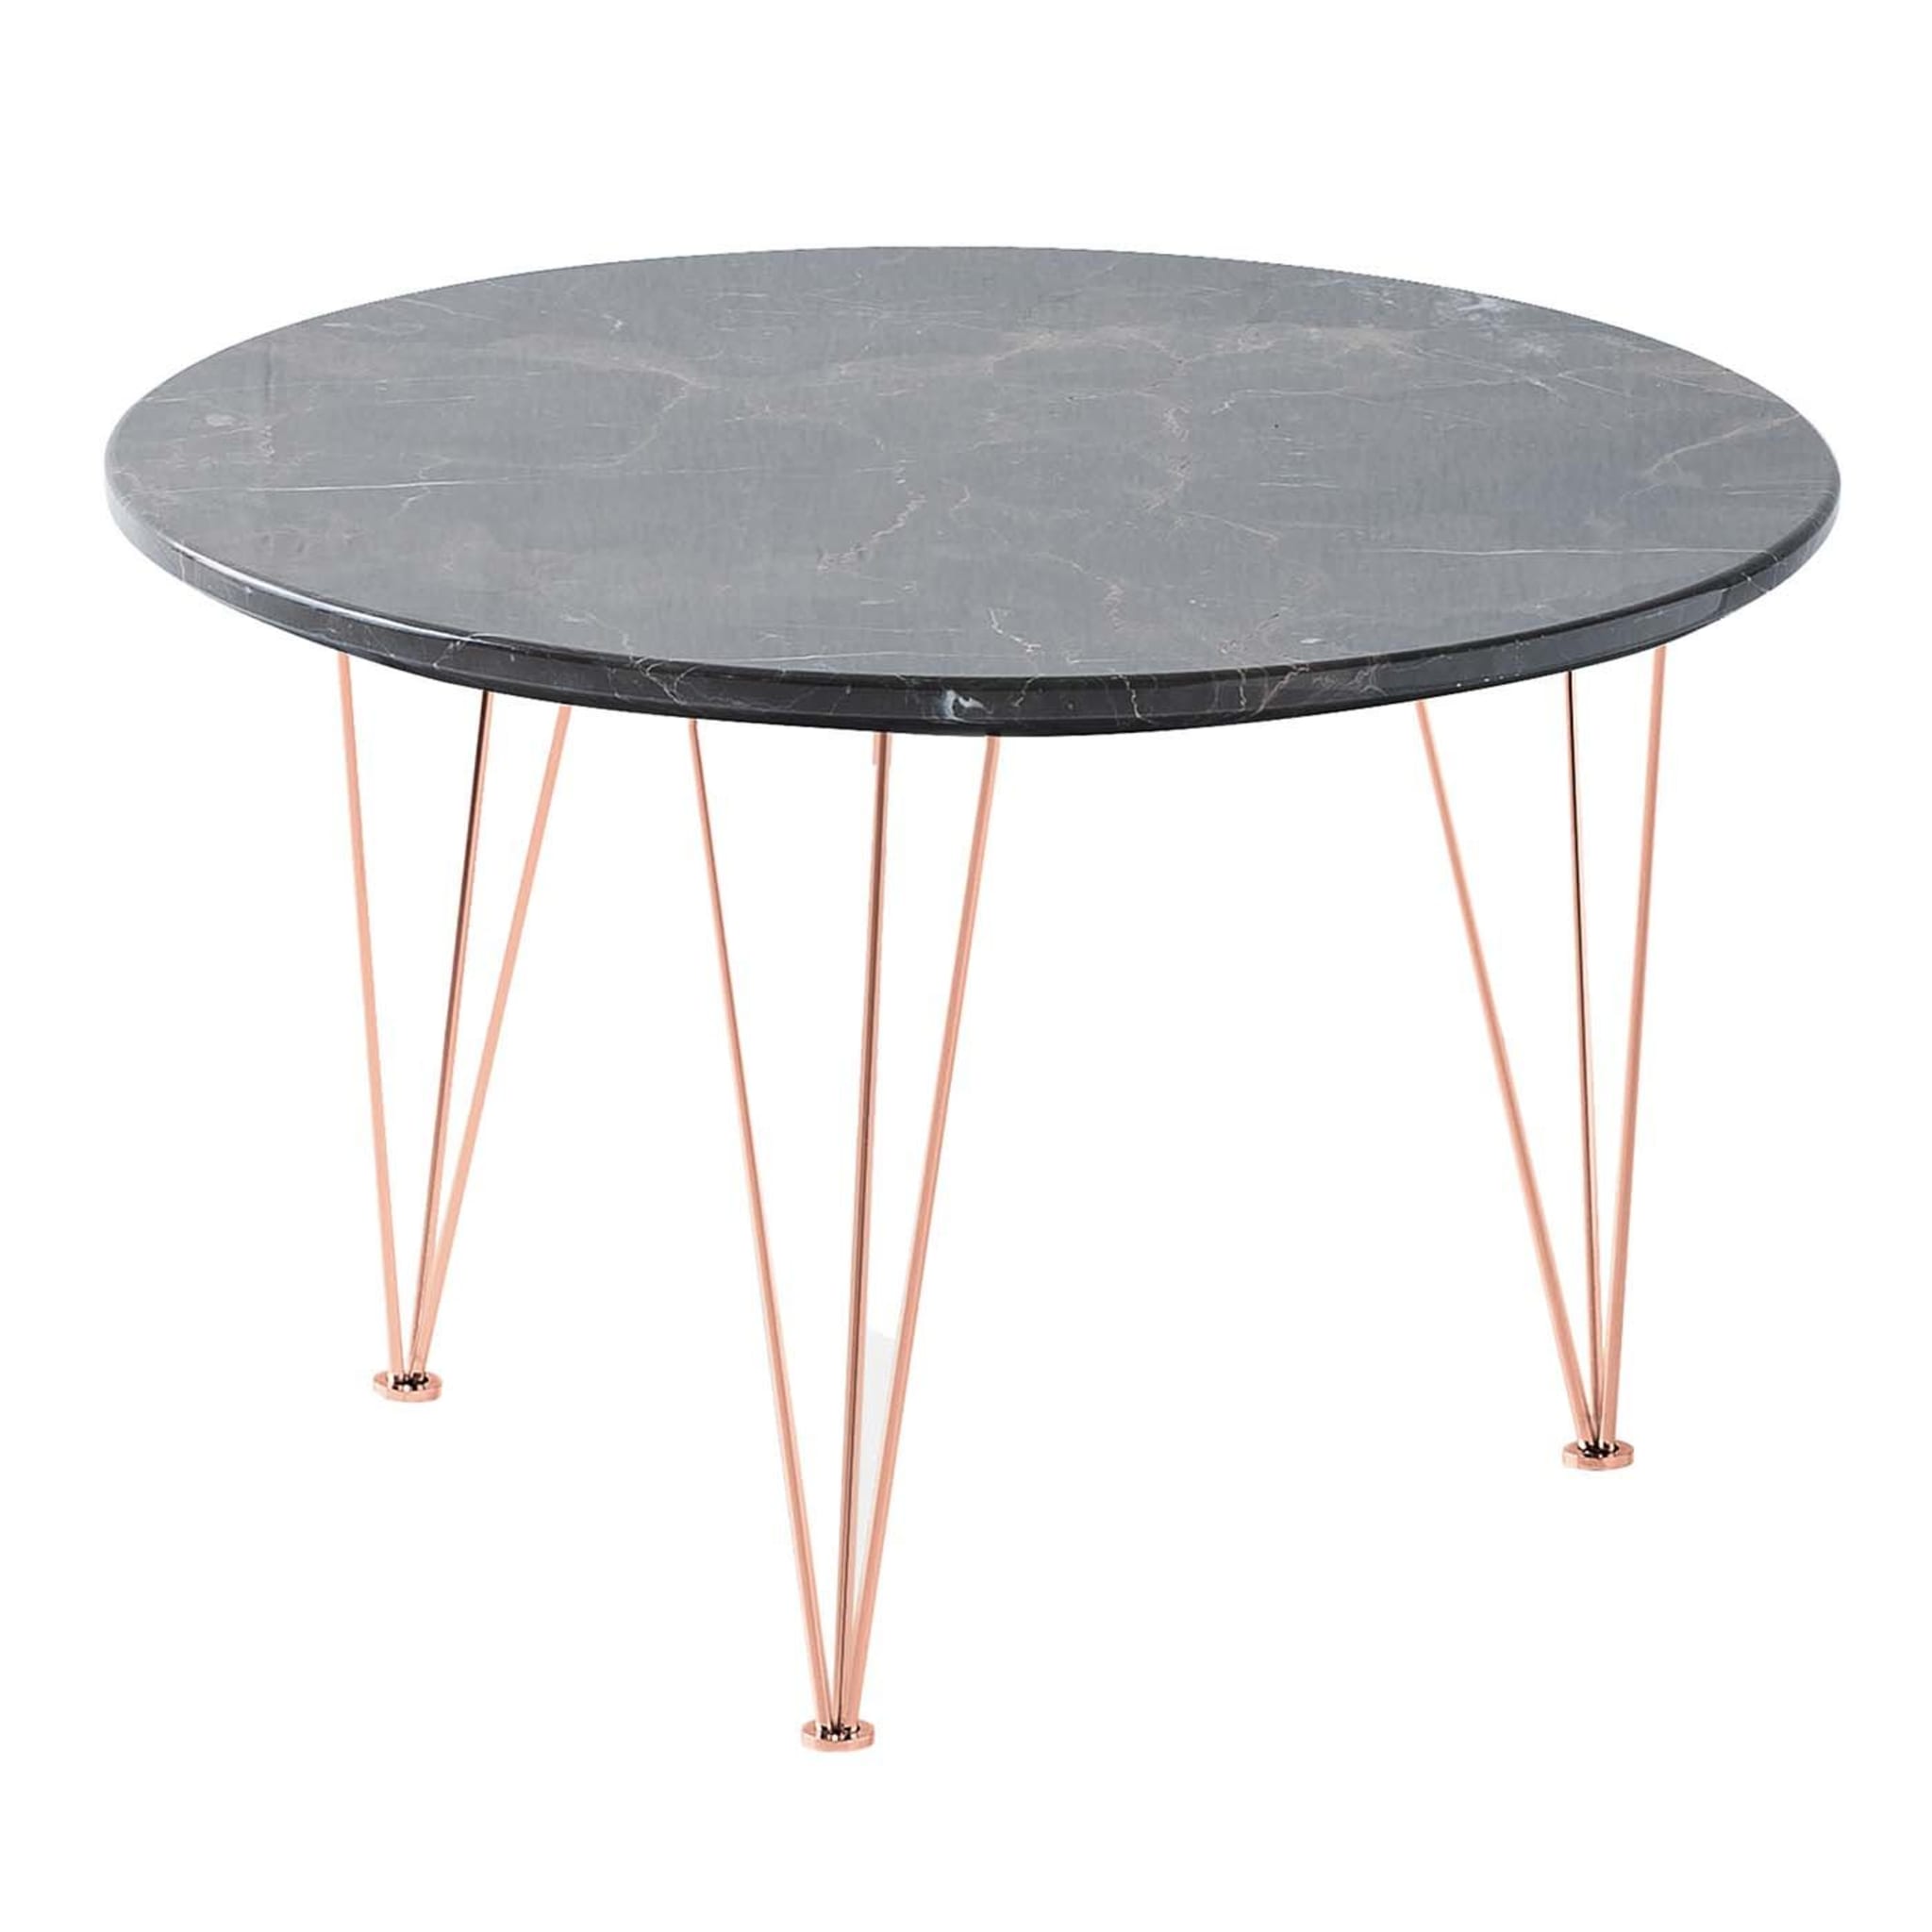 Table d'appoint ronde basse Flamingo avec pieds en cuivre - Vue principale